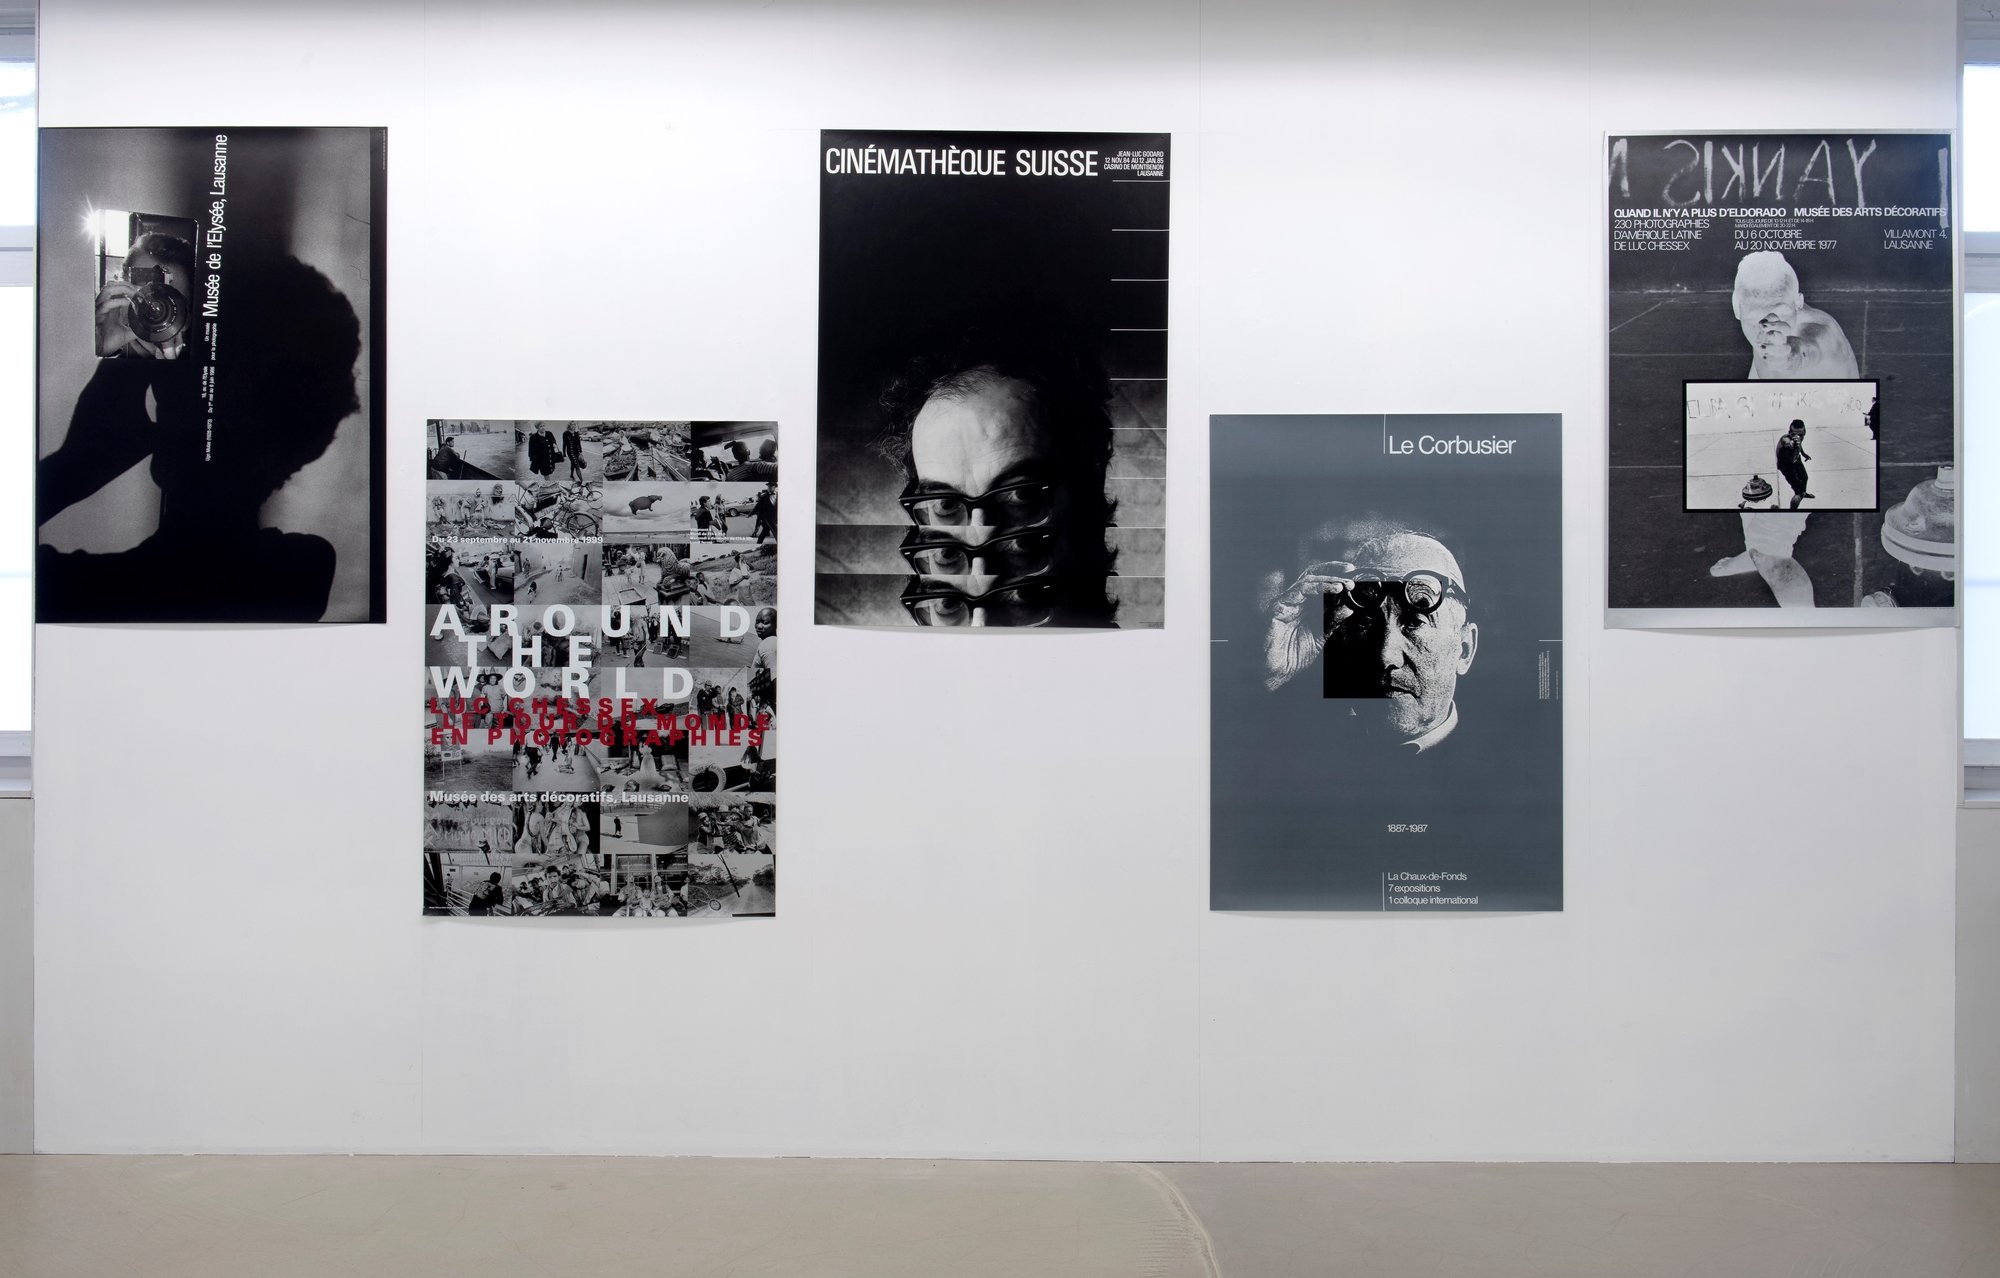 L'affiche de Godard (au milieu) est au Museum of Modern Art (MOMA) de New York: "Elle fait partie de la collection d'Estée Lauder déposée là-bas", raconte Werner Jeker.